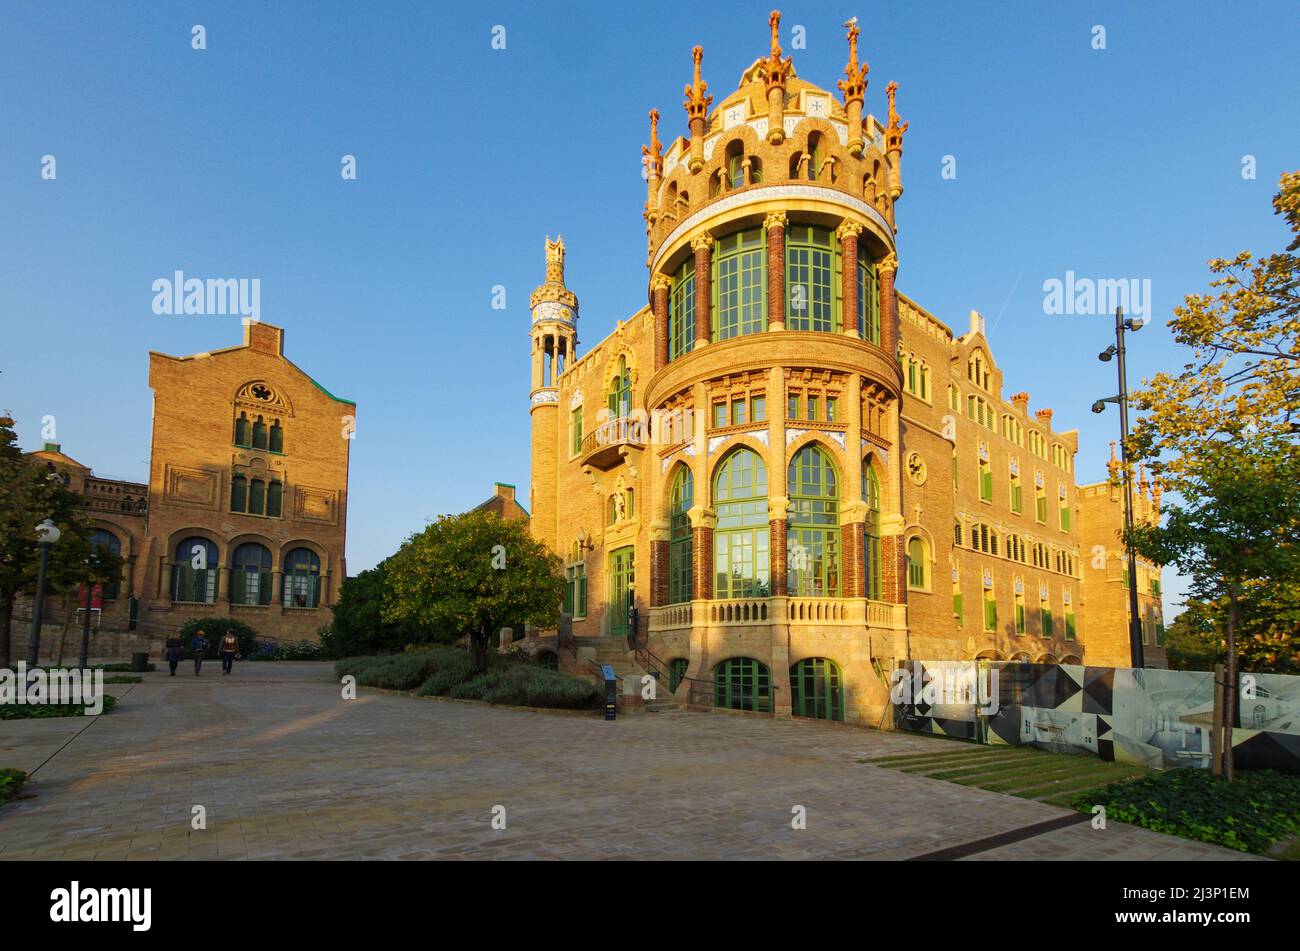 Hospital de la Santa Creu i Sant Pau, Pavilion, Architect Luis Doménech y Montaner, Eixample District, Barcelona, Catalonia, Spain, Unesco World Herit Stock Photo